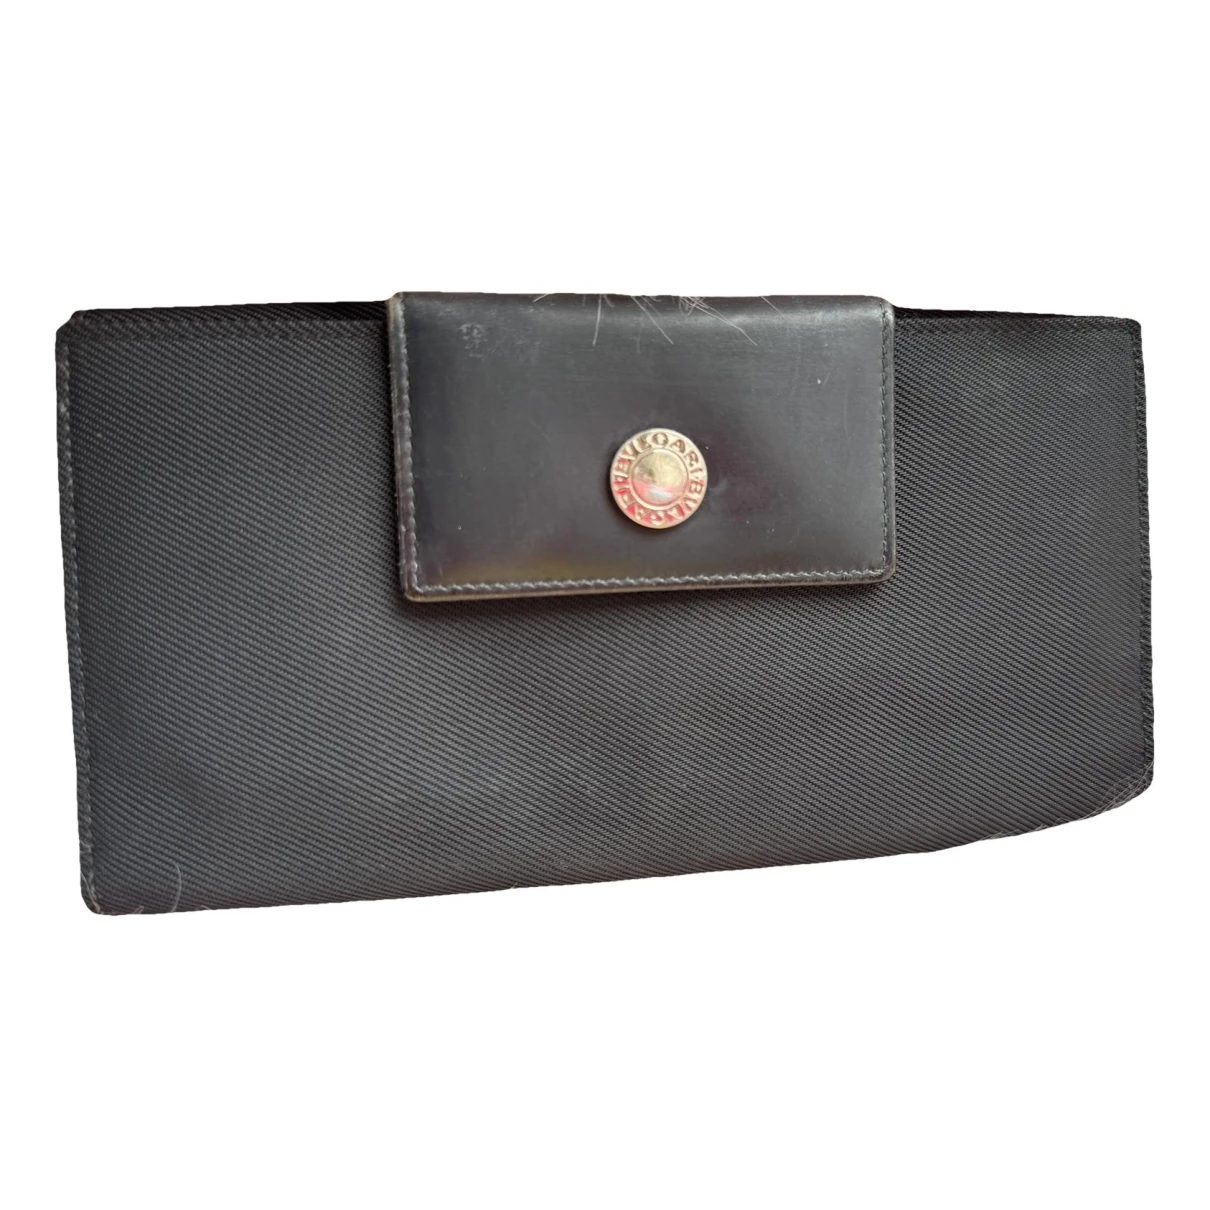 Pre-owned Bvlgari Wallet In Black